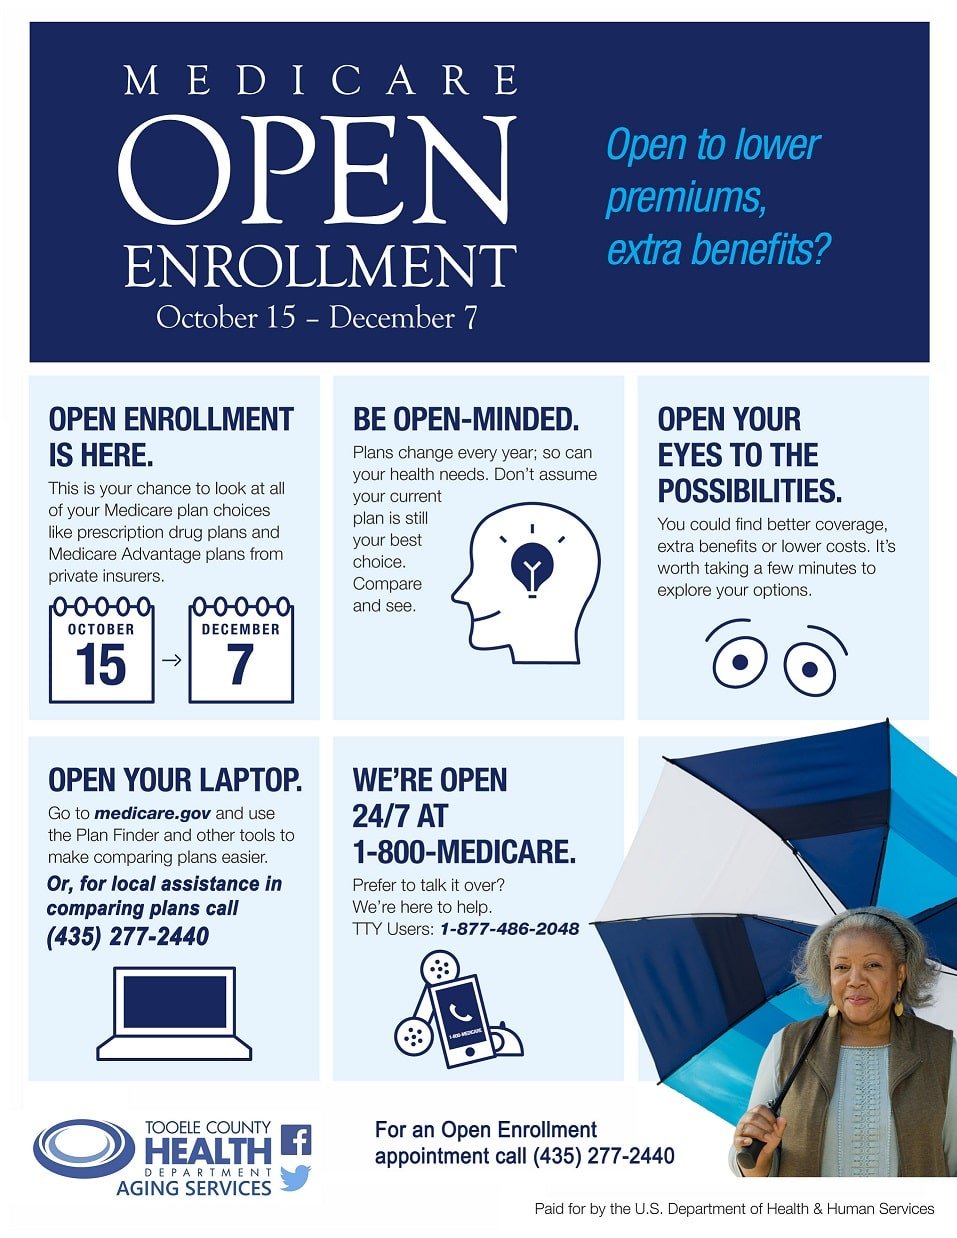 Medicare Open Enrollment Dates for 2020